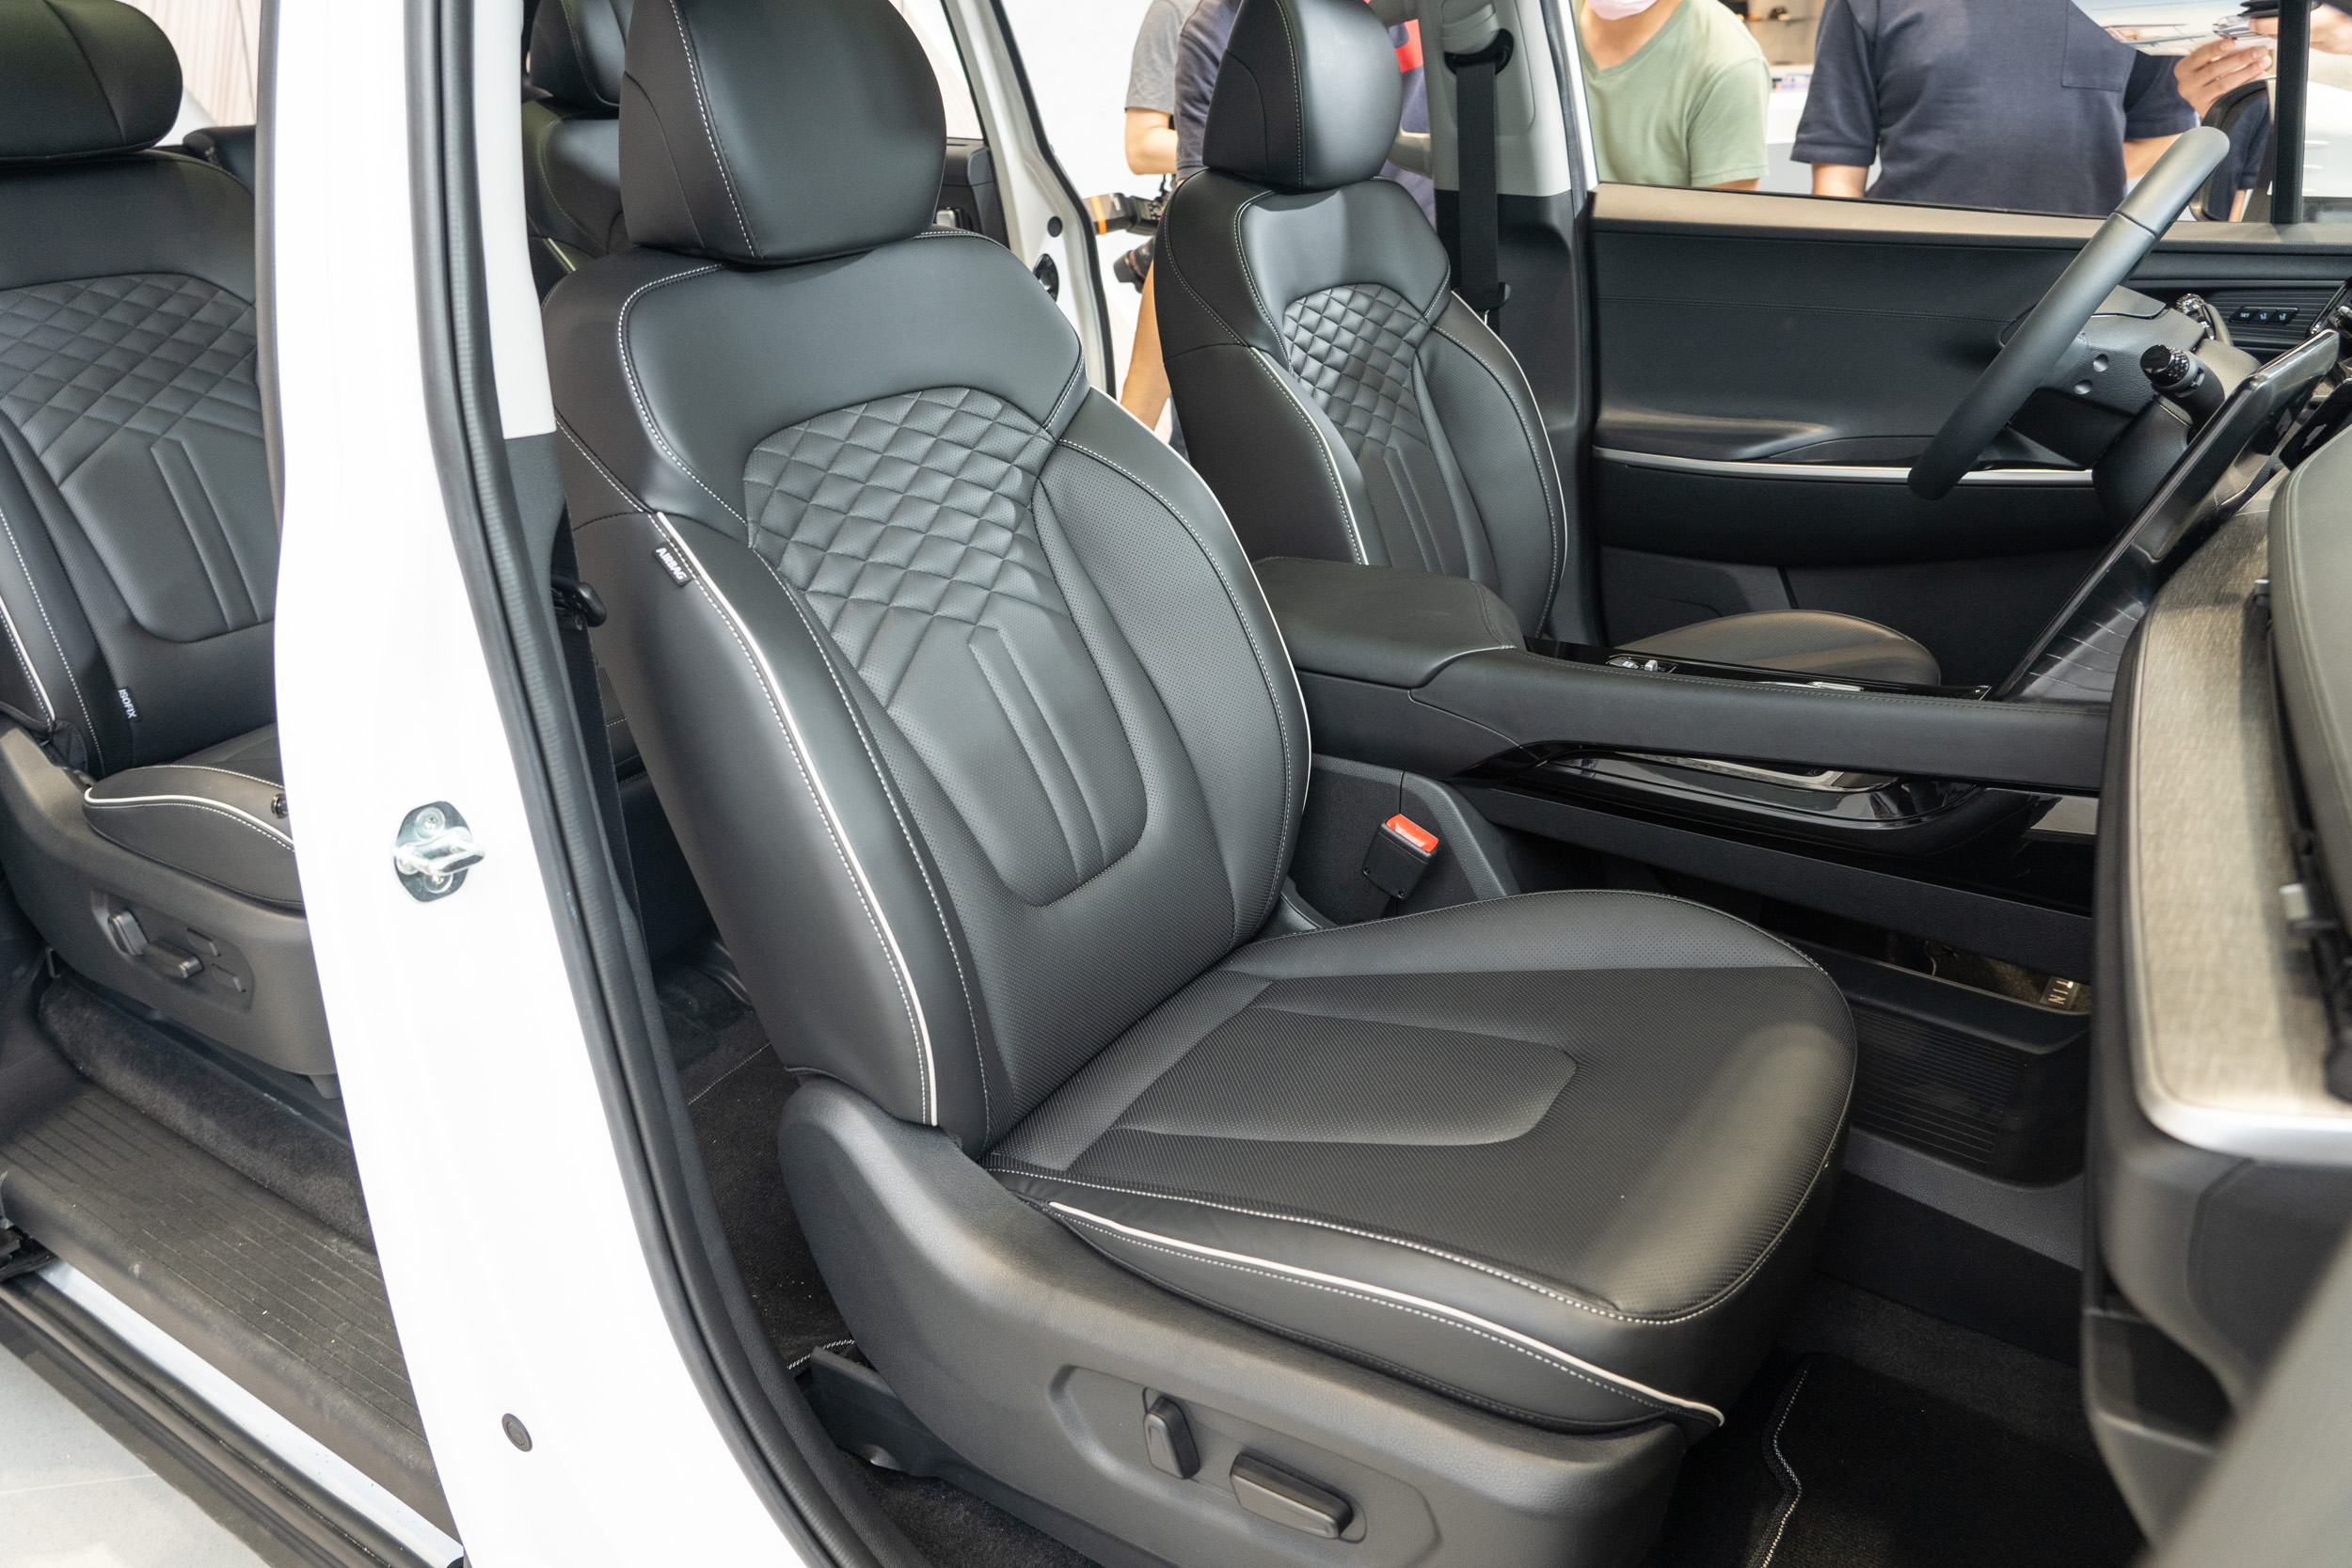 GLT-B 車型雙前座椅皆為電動調整功能，並具備通風加熱機制。